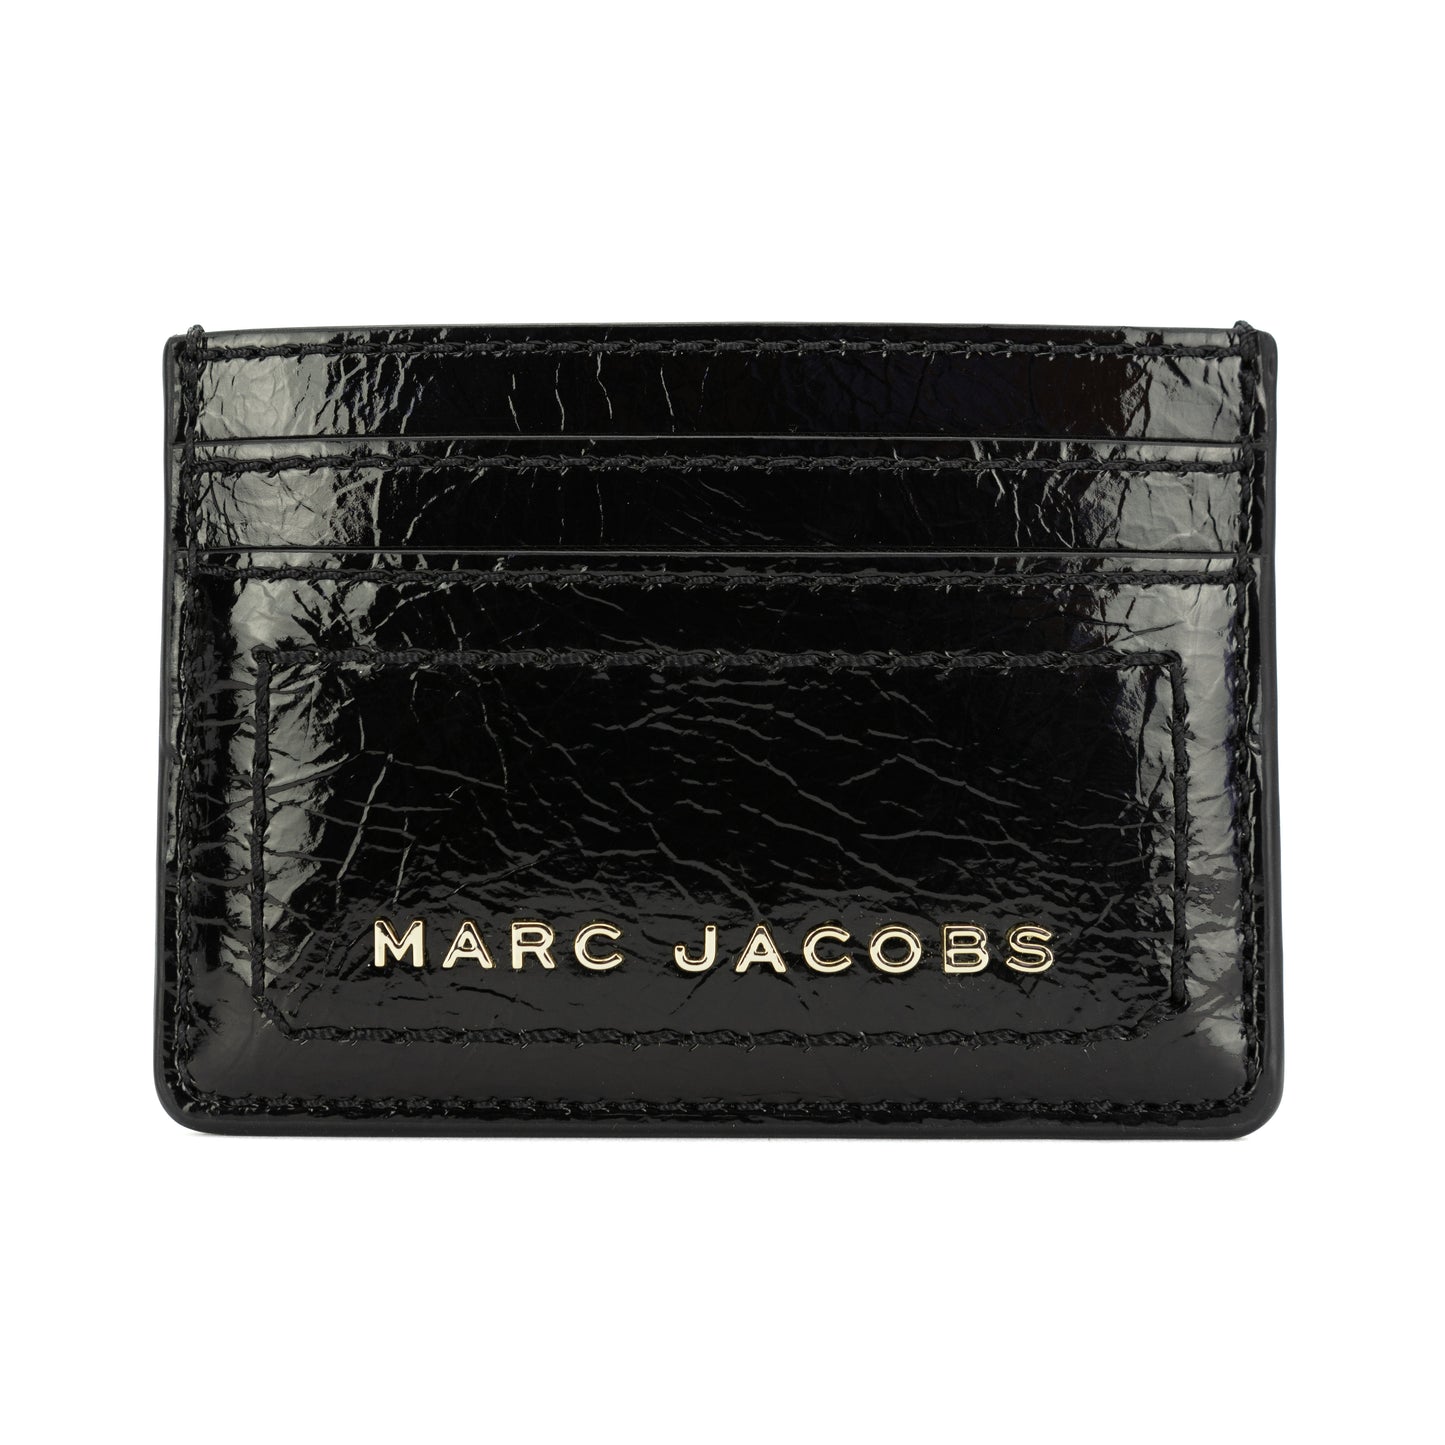 Marc Jacobs Men's Card Case Holder - Black